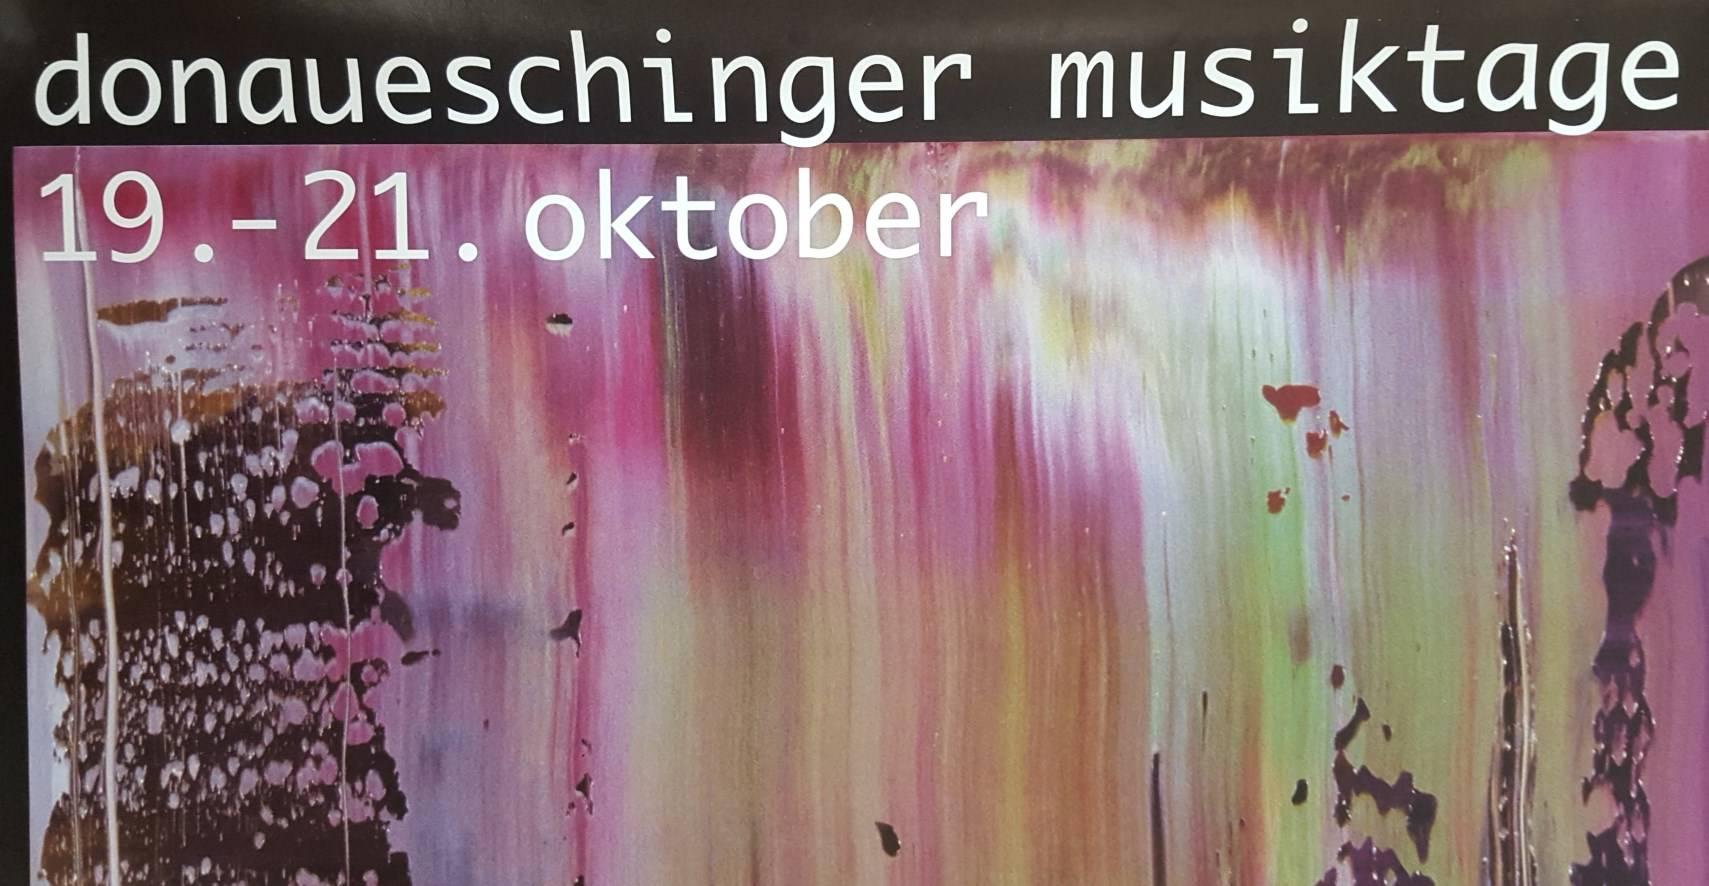 Donaueschinger Musikstage 1